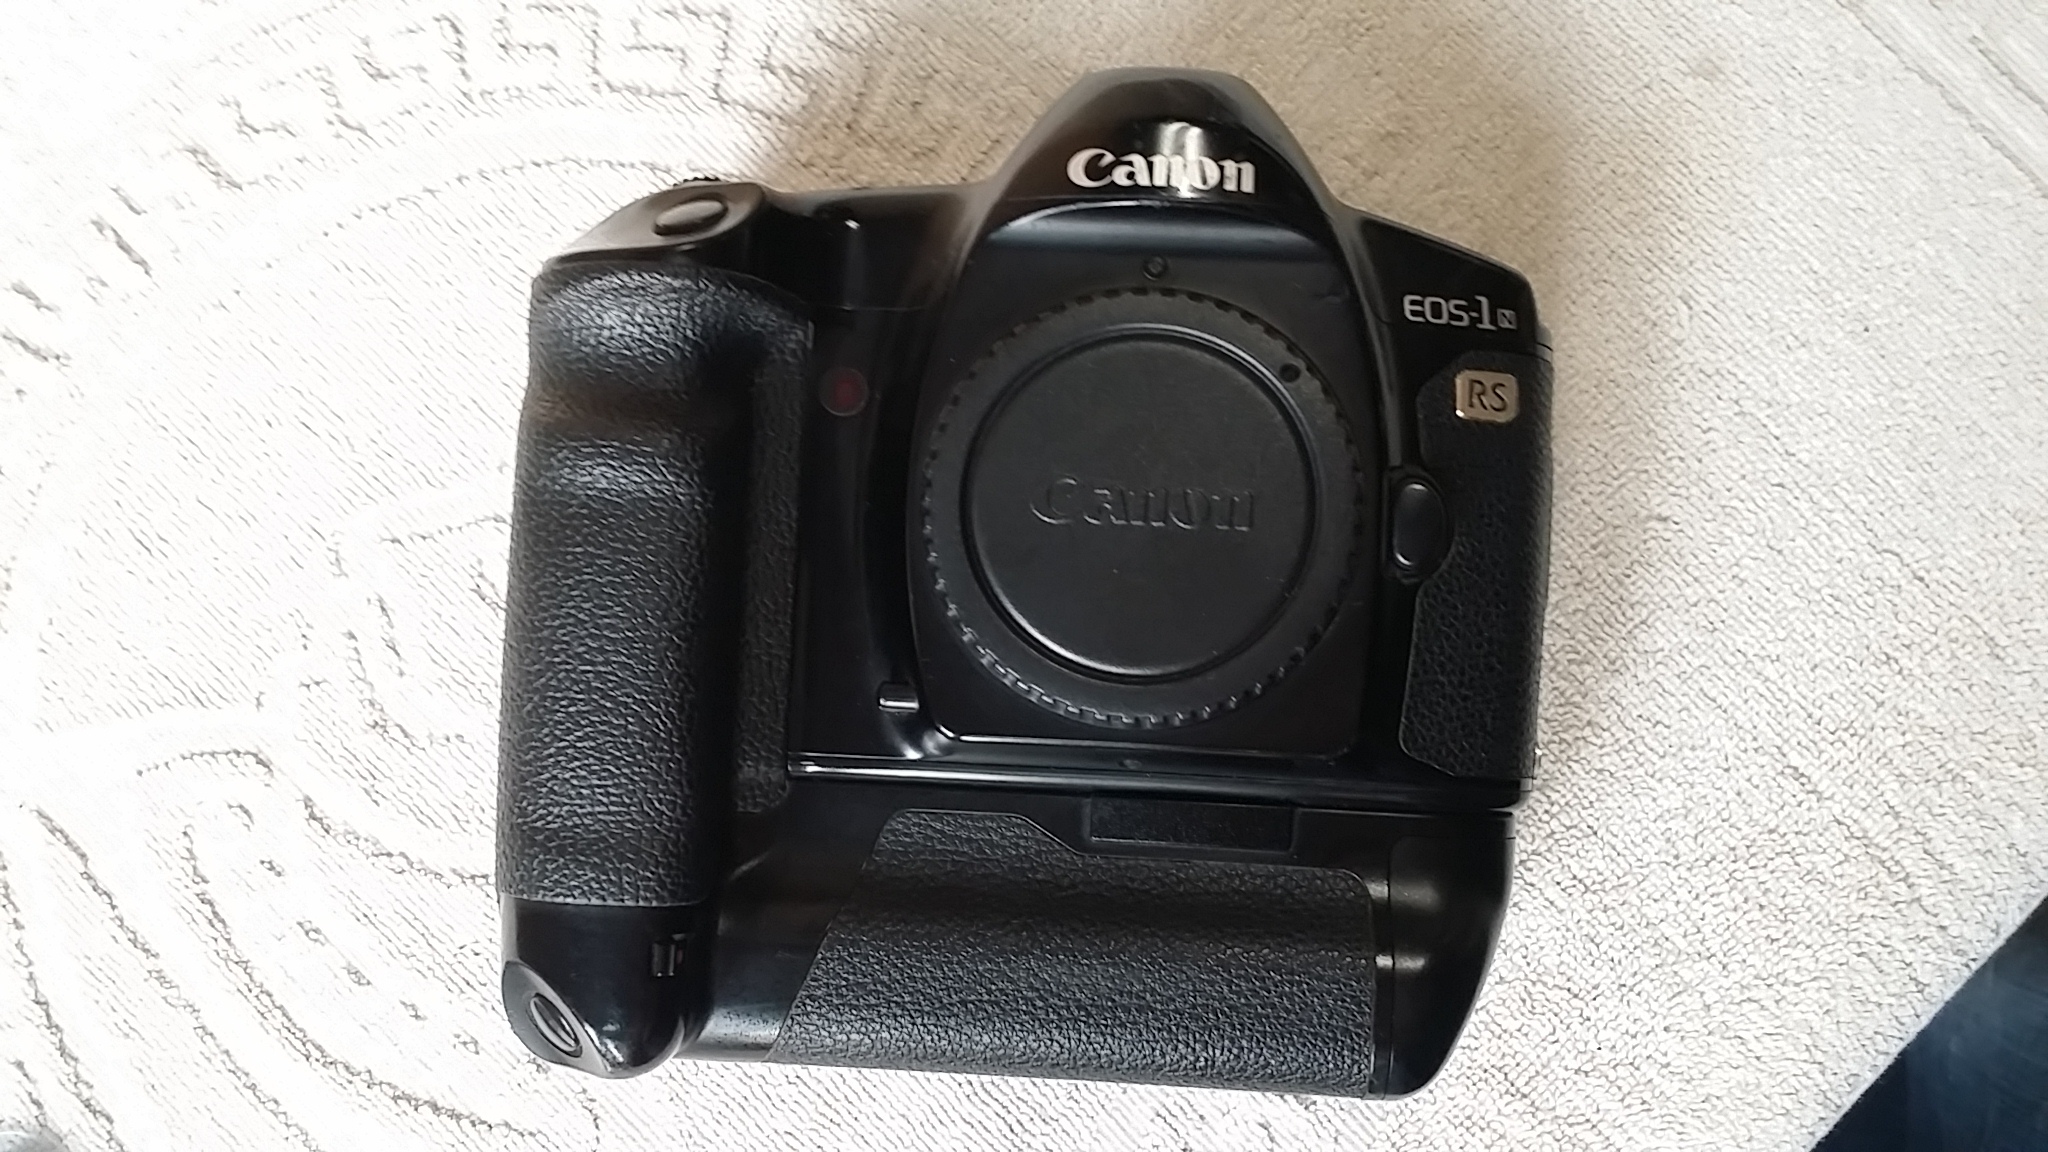 佳能 EOS1N RS、1N、50E、300等11个胶片相机，价格80-1850元